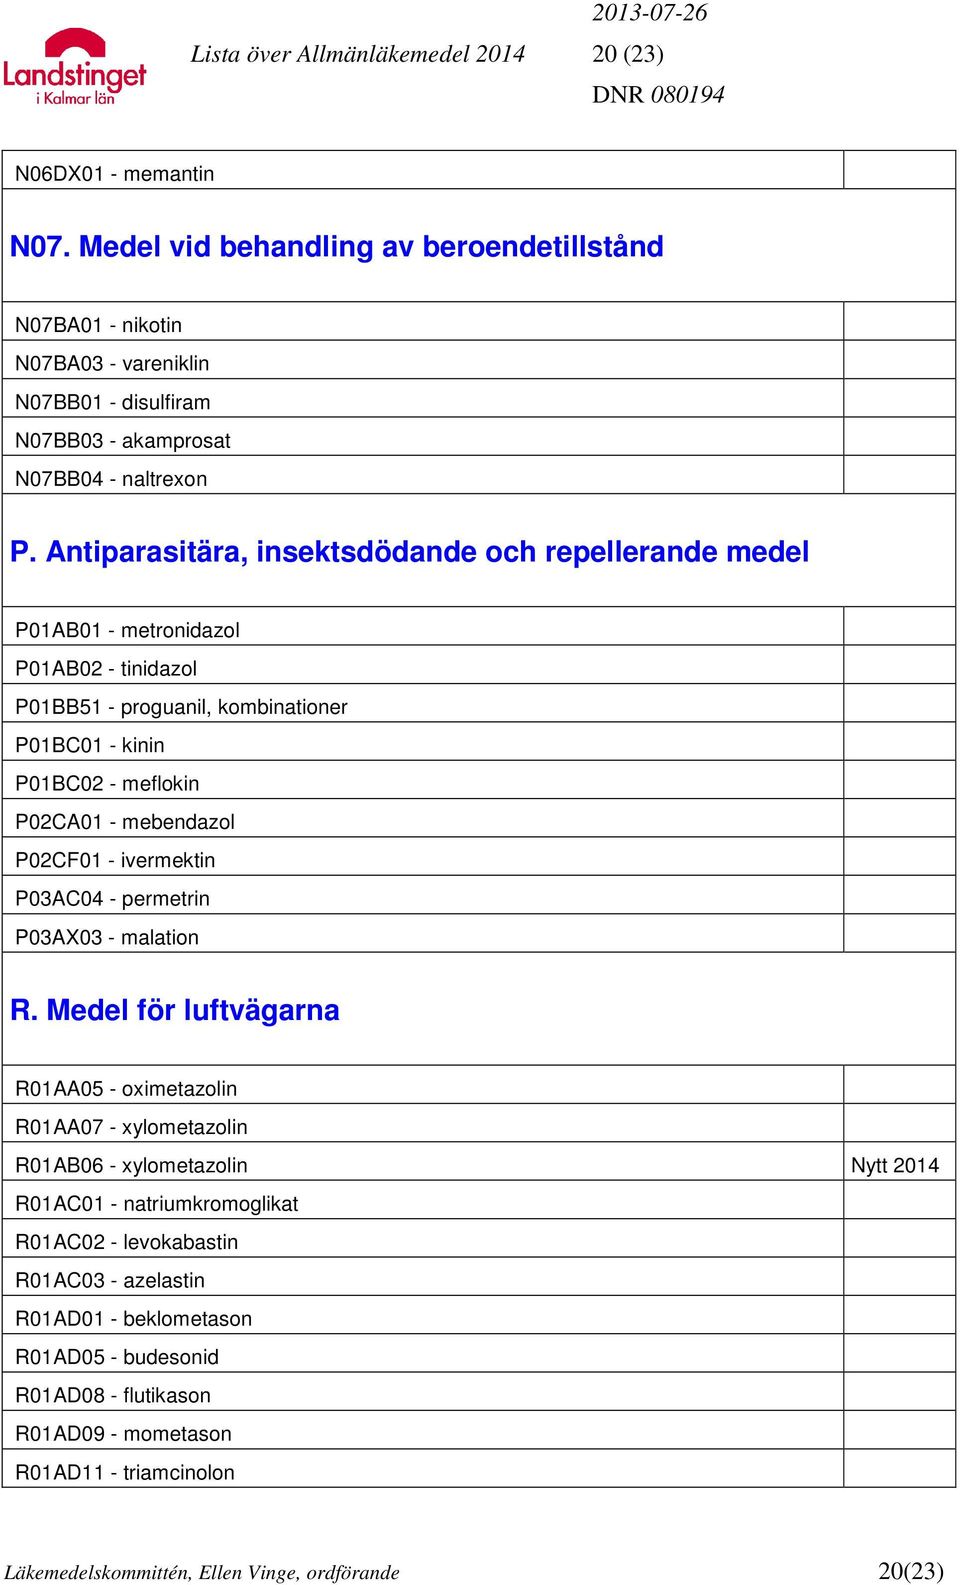 Antiparasitära, insektsdödande och repellerande medel P01AB01 - metronidazol P01AB02 - tinidazol P01BB51 - proguanil, kombinationer P01BC01 - kinin P01BC02 - meflokin P02CA01 - mebendazol P02CF01 -